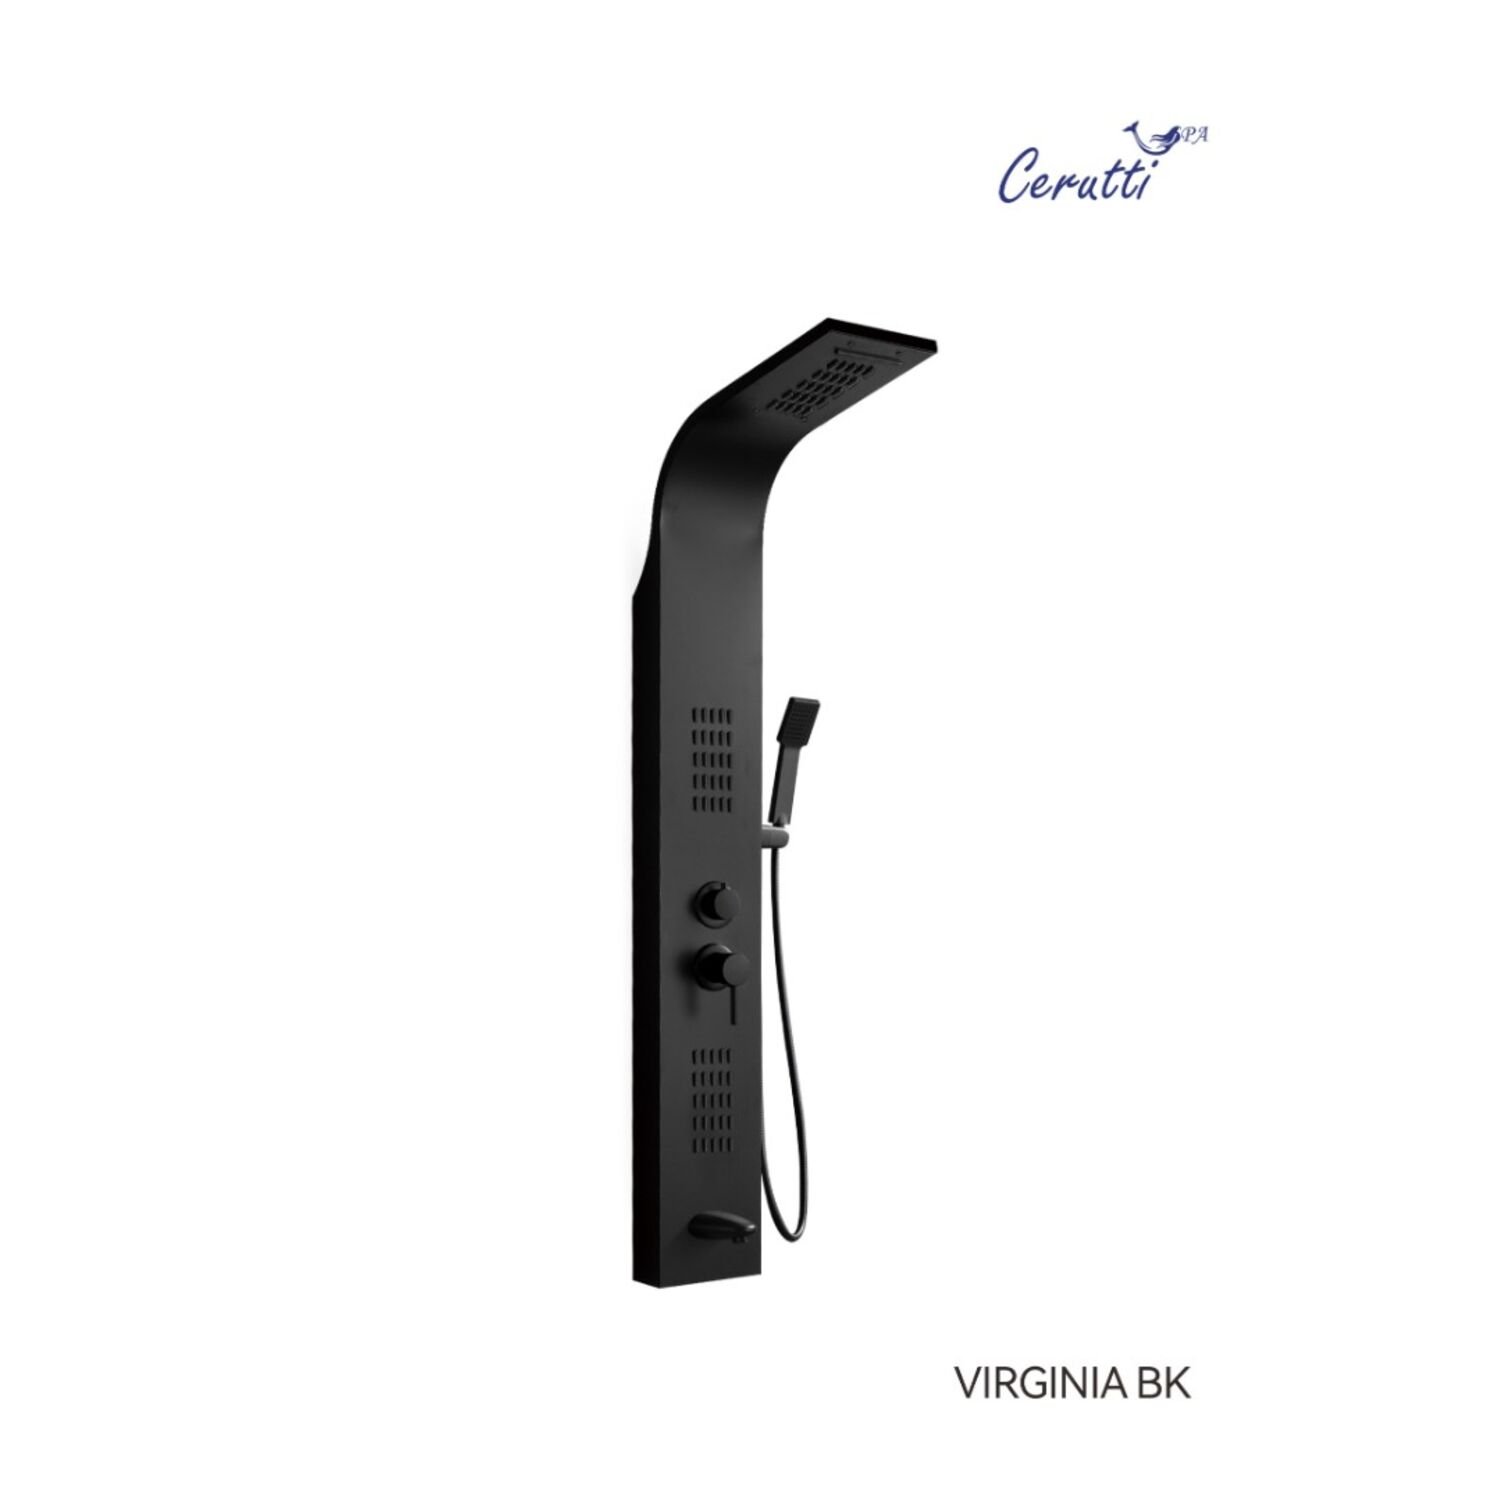 Душевая панель CeruttiSPA Virginia BK CT9989, с гидромассажем, цвет черный